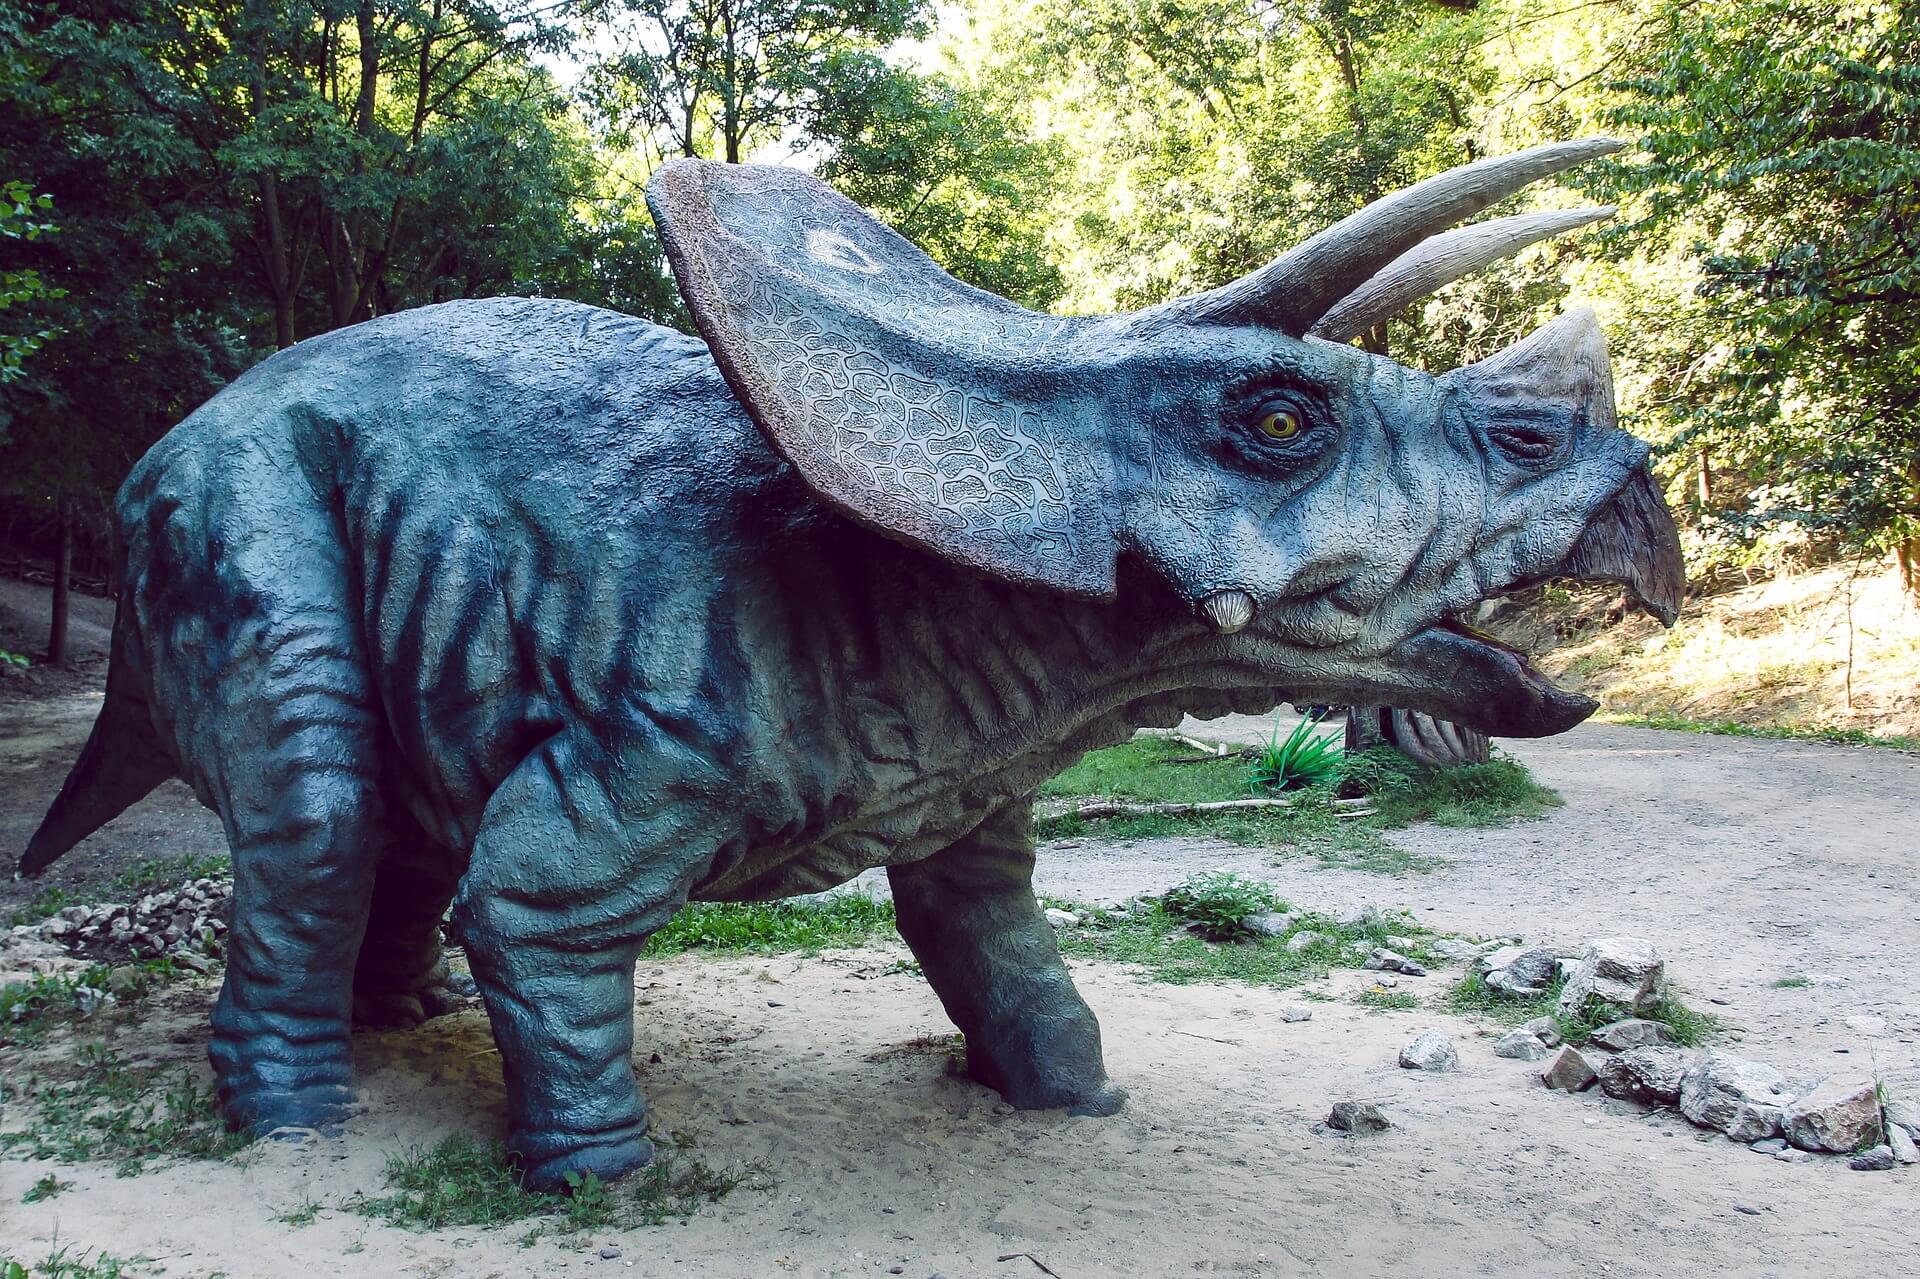 O triceratops, um dos dinossauros mais famosos, em seu habitat